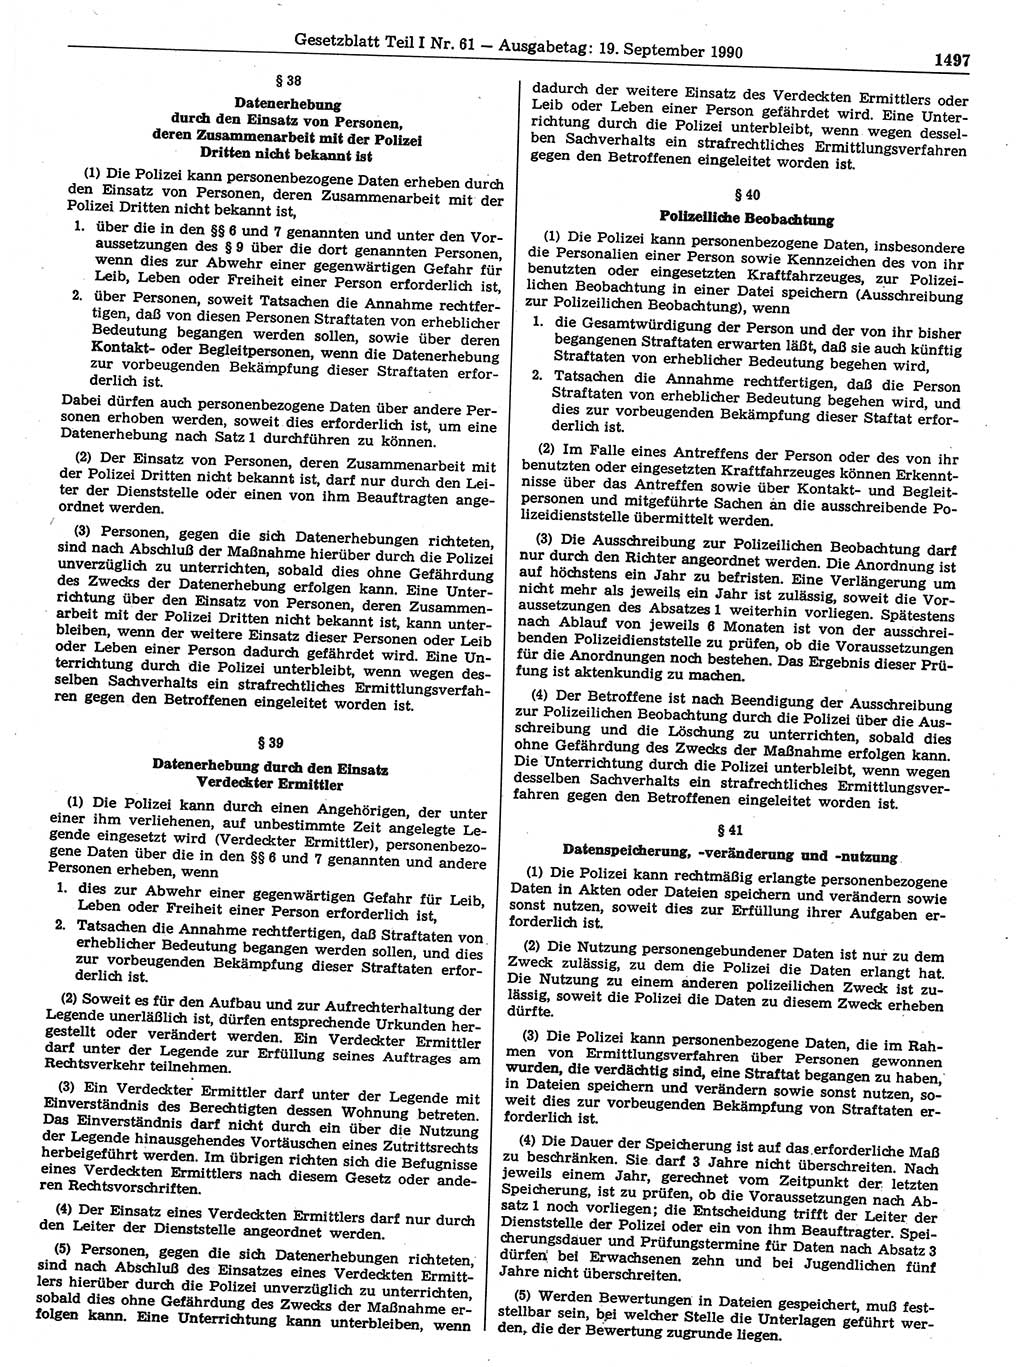 Gesetzblatt (GBl.) der Deutschen Demokratischen Republik (DDR) Teil Ⅰ 1990, Seite 1497 (GBl. DDR Ⅰ 1990, S. 1497)